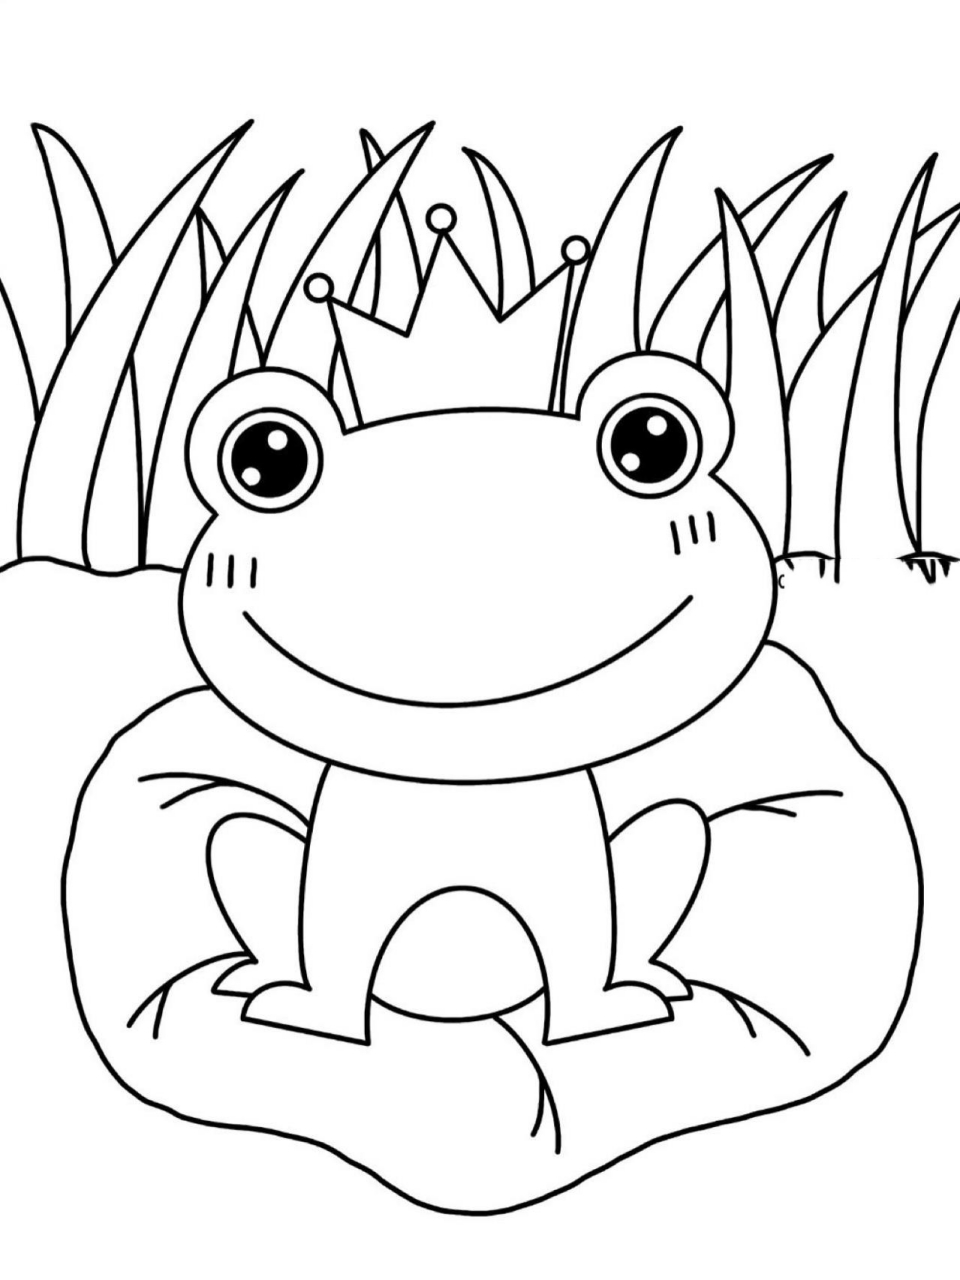 儿童画青蛙青蛙王子图片